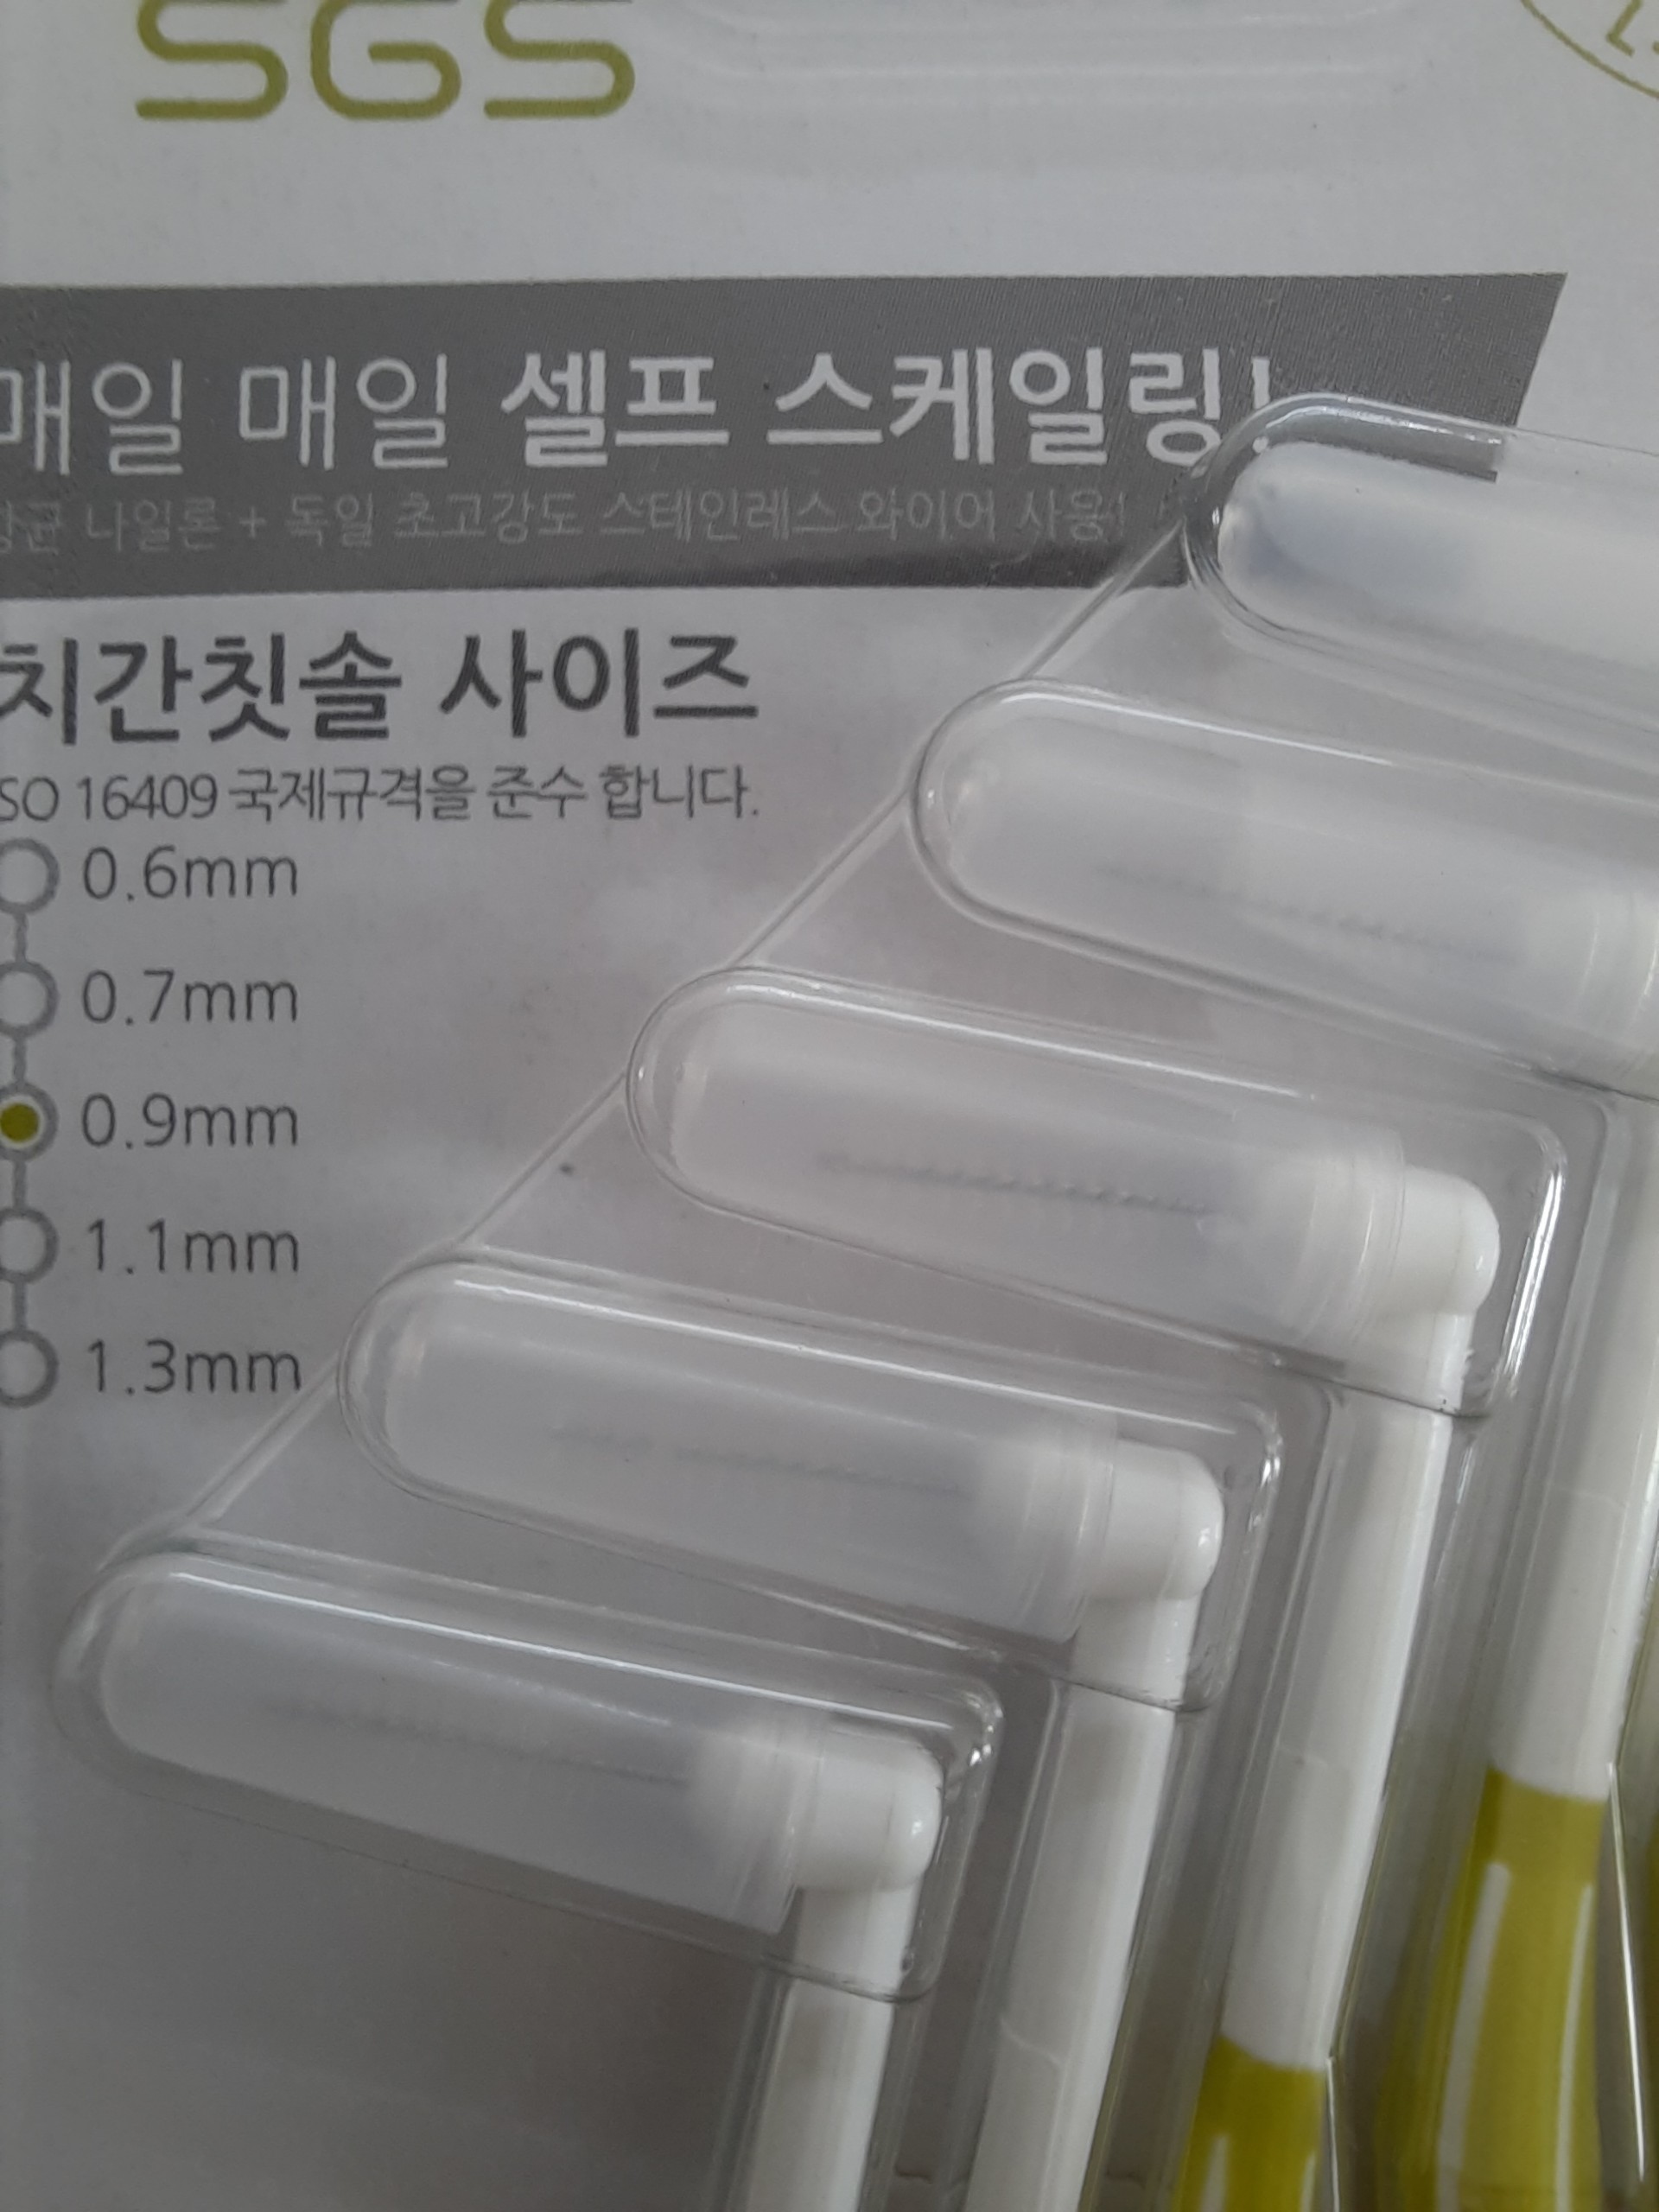 Bàn chải kẽ răng SGS loại L 5cái/vỉ nhập khẩu Hàn Quốc